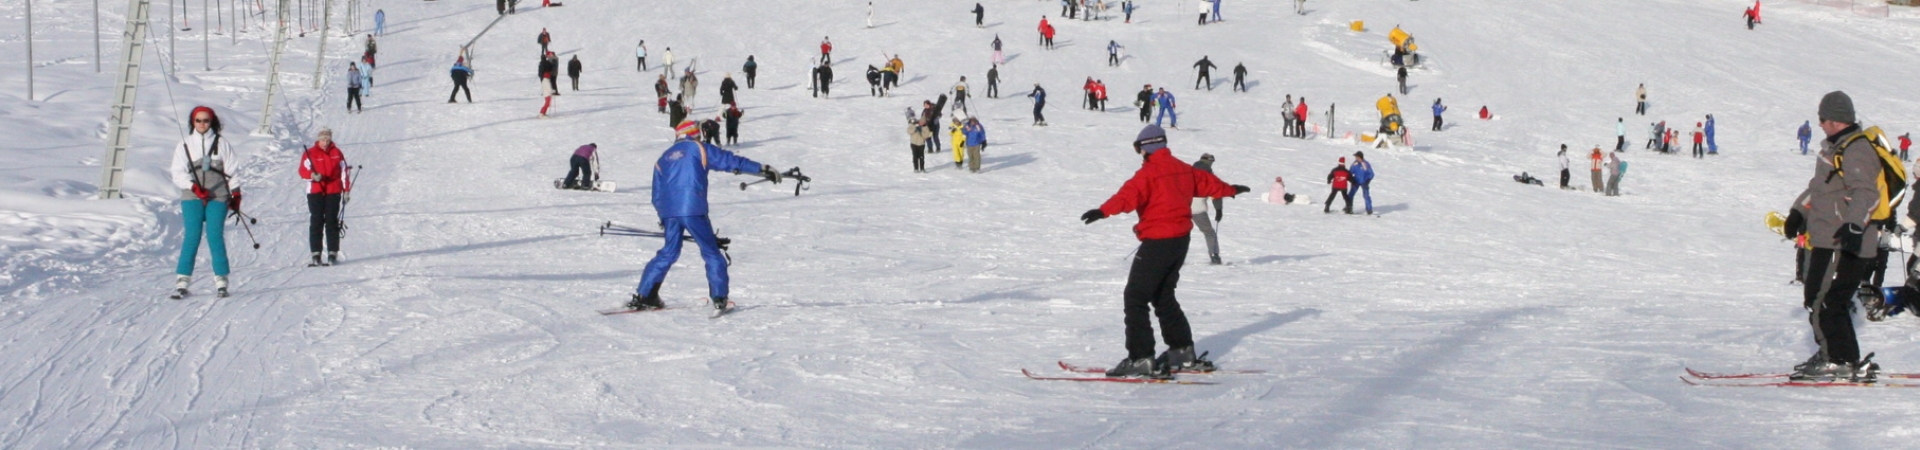 Hai la schi in Bulgaria